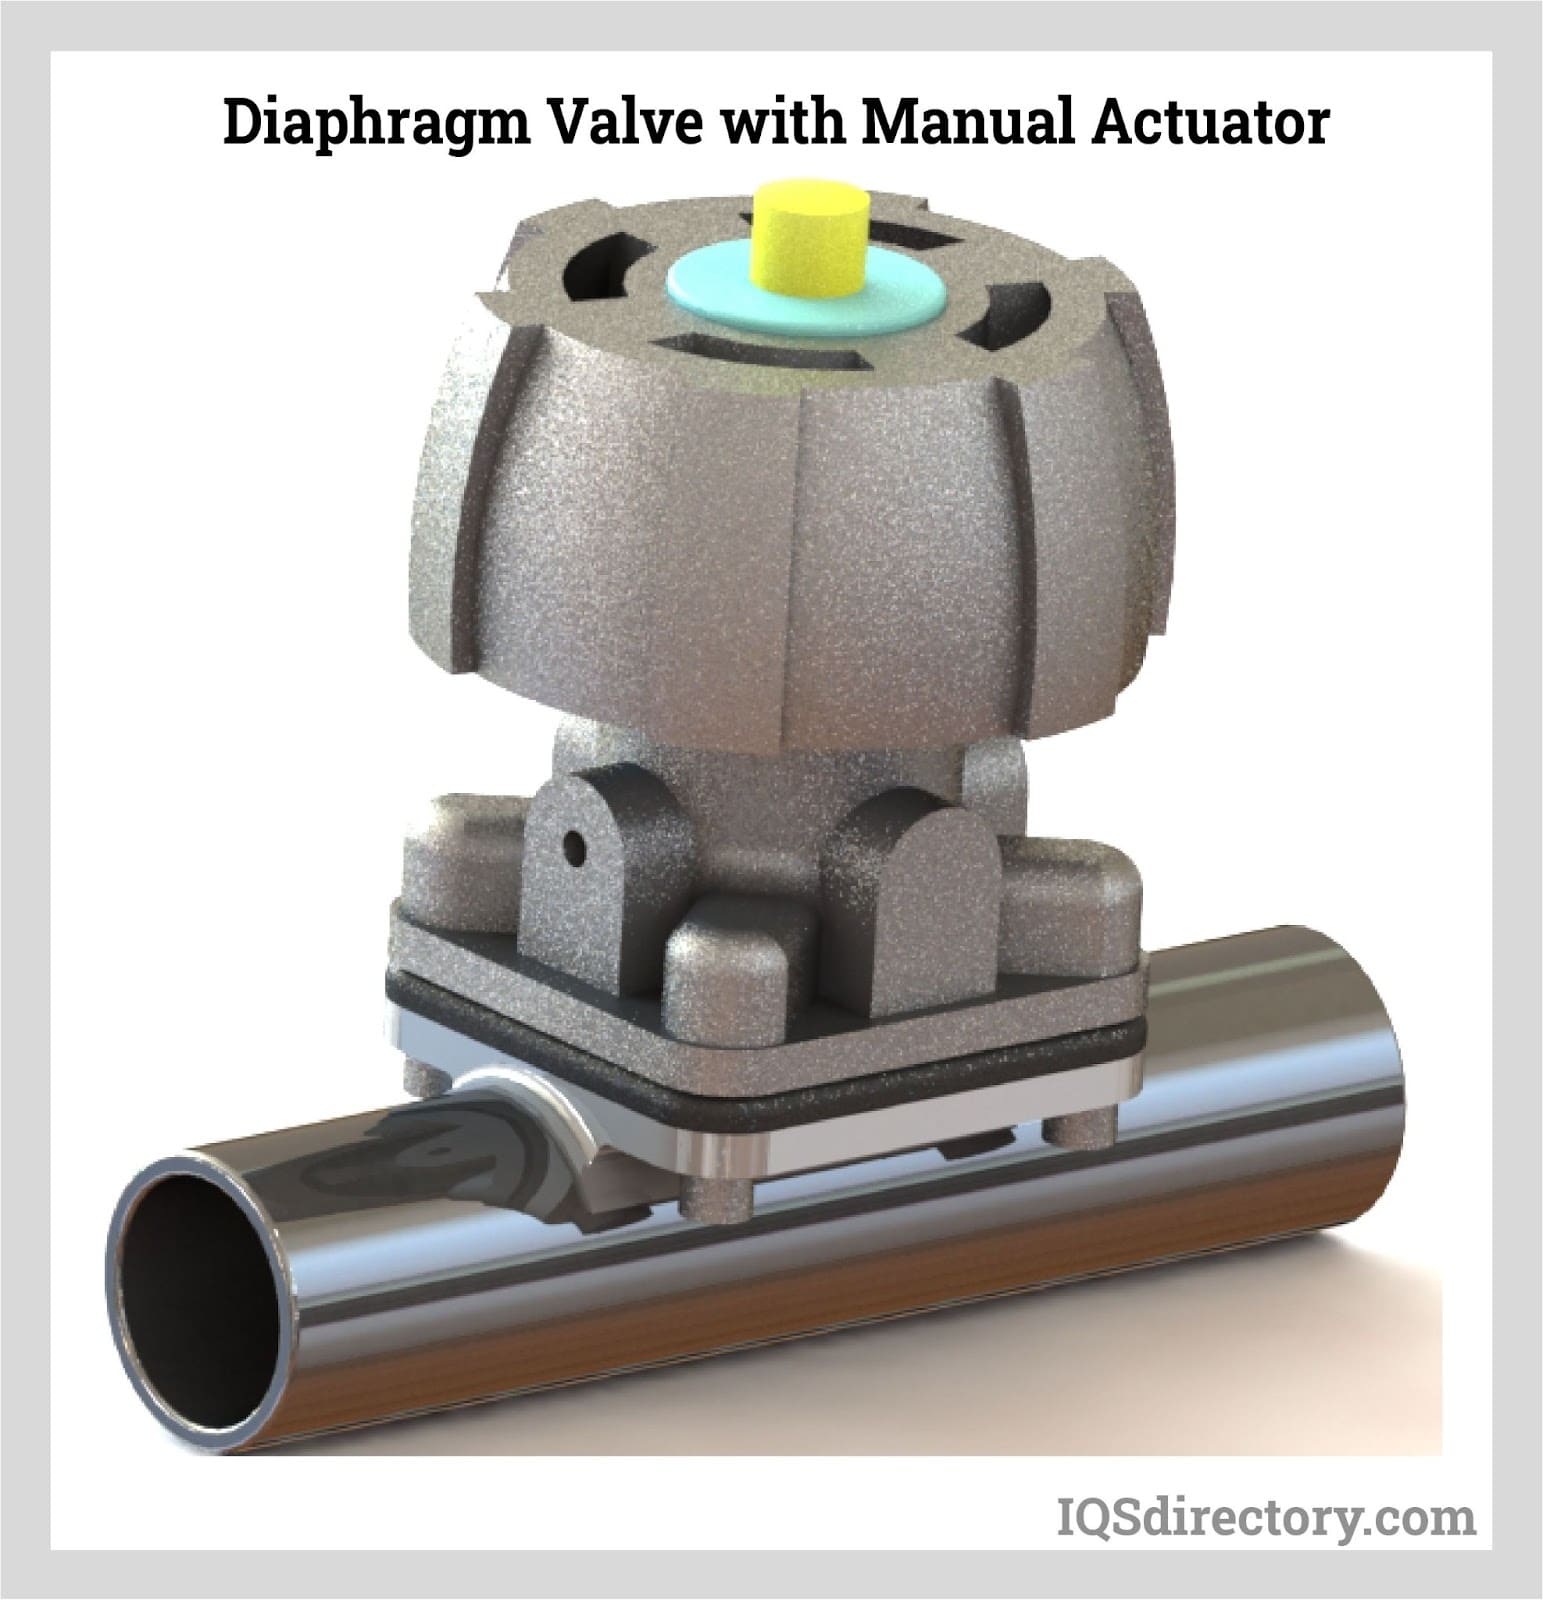 Diaphragm Valve with Manual Actuator